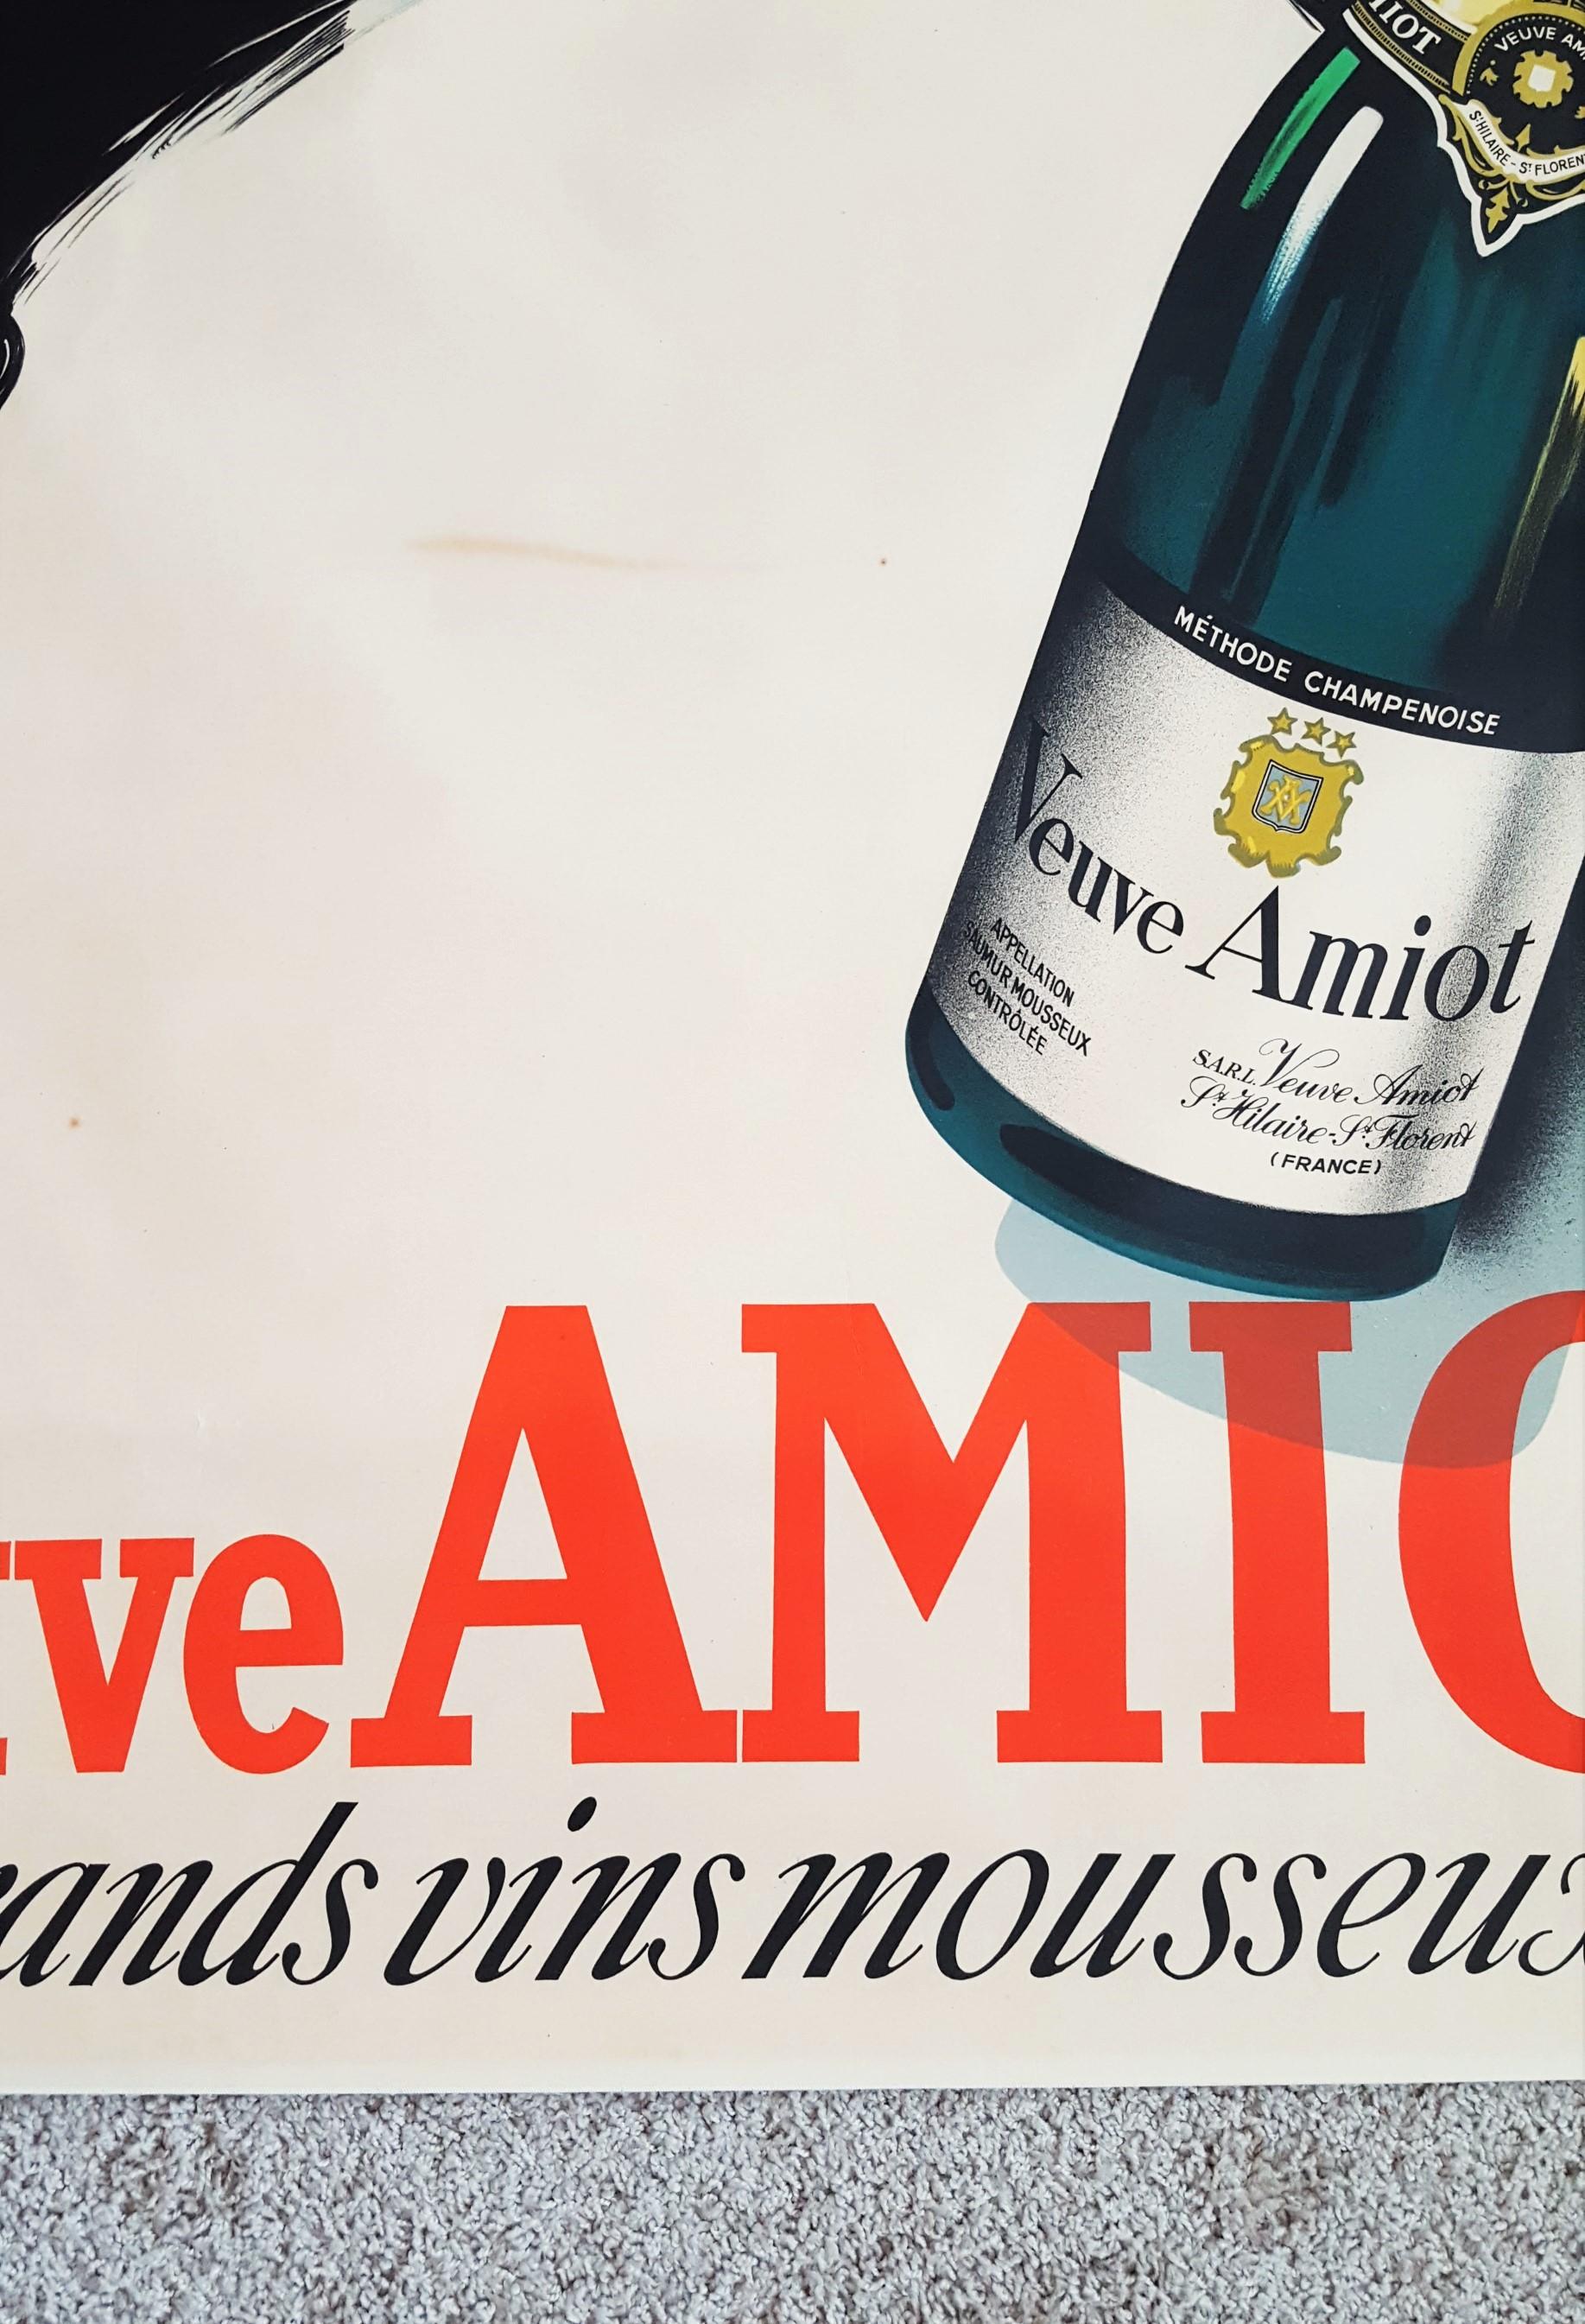 Veuve Amiot: Grands Vins Mousseux - Beige Figurative Print by Robert Falcucci